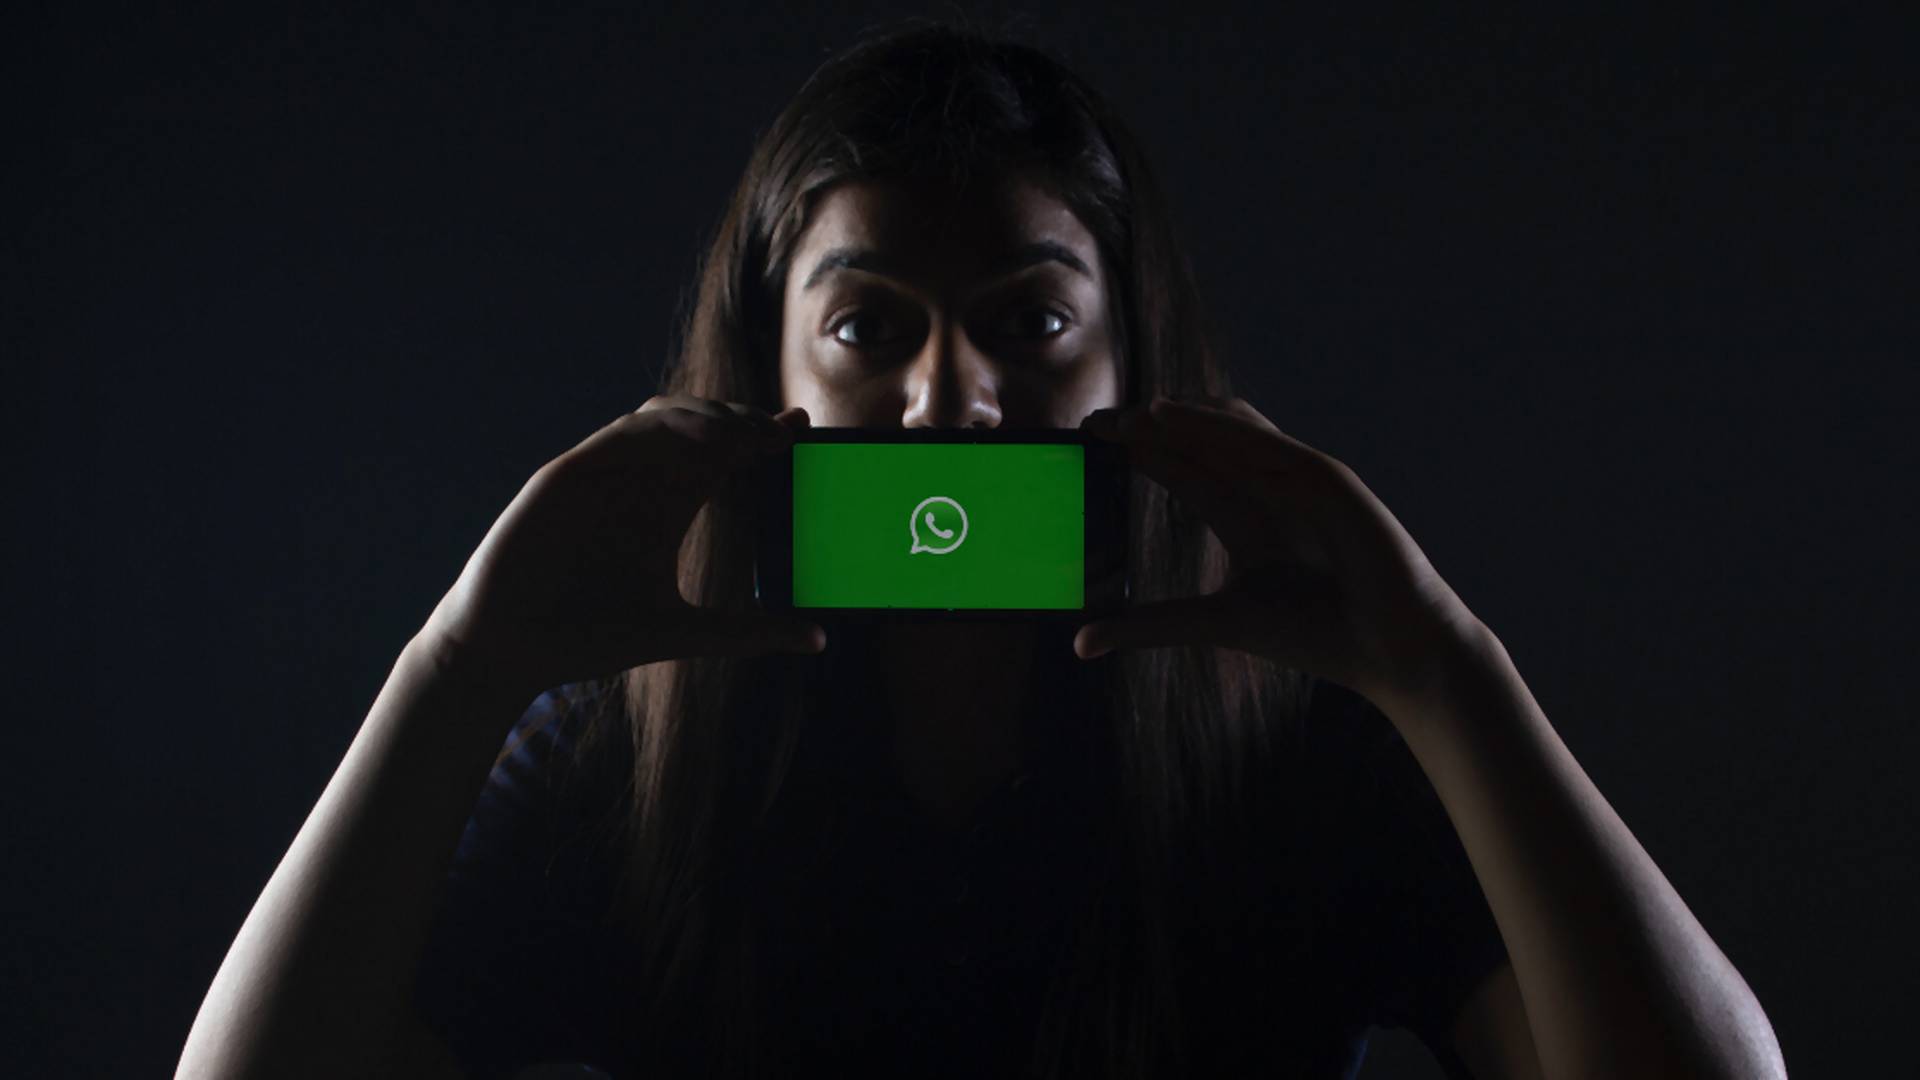 Žena doplatila na prísne zákony v Dubaji. Poslala nadávku cez WhatsApp, hrozí jej väzenie